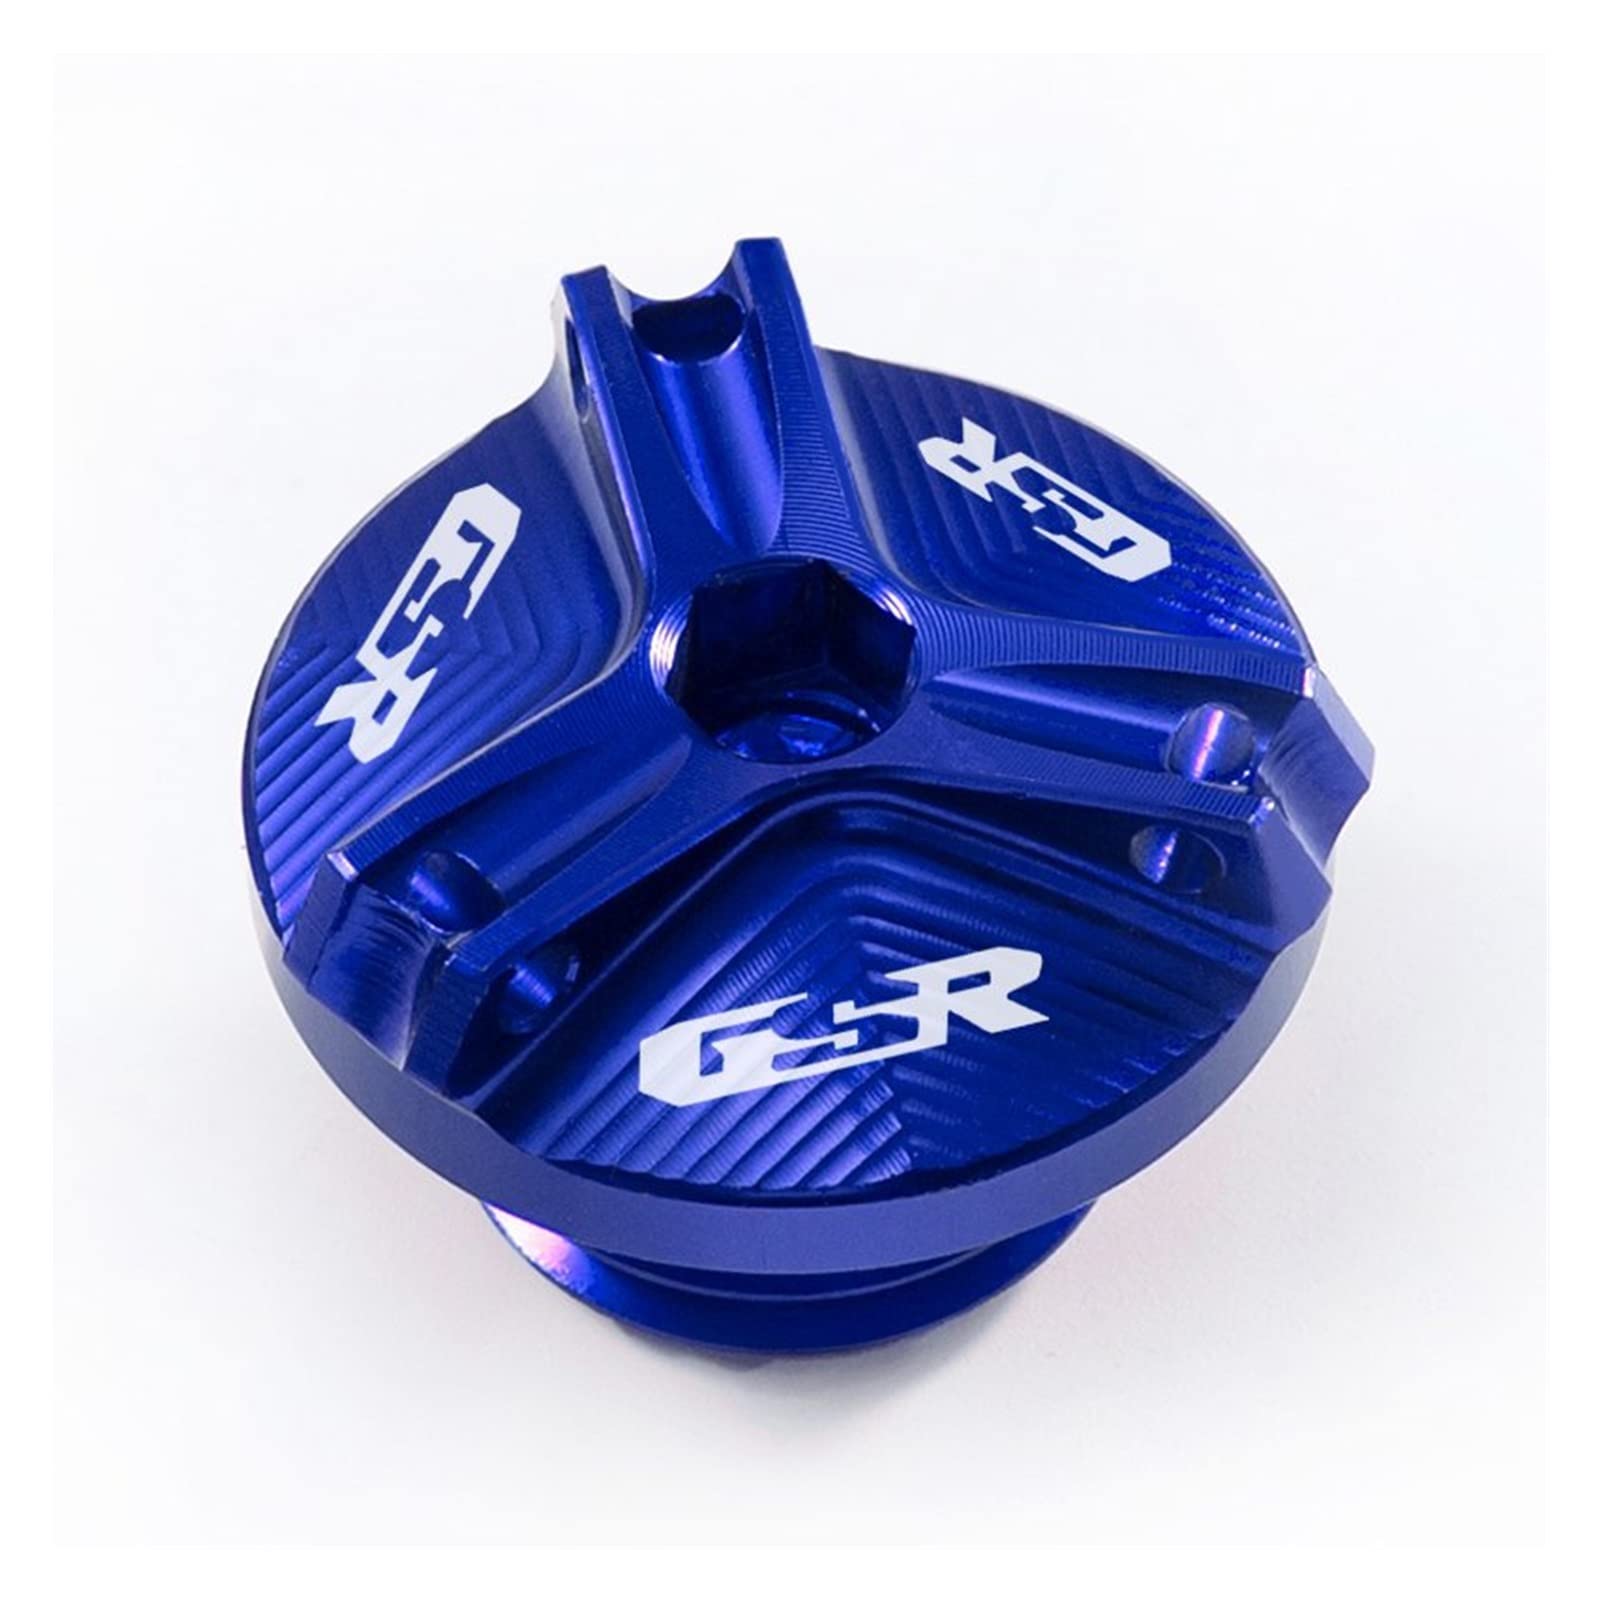 Öleinfülldeckelschraube Für Su-zu-ki GSR400 GSR600 GSR750 GSR 400 GSR 600 GSR 750 Motorrad Motoröldeckelschraube Tankdeckelschutz Zubehör (Color : Blau) von CBTPON